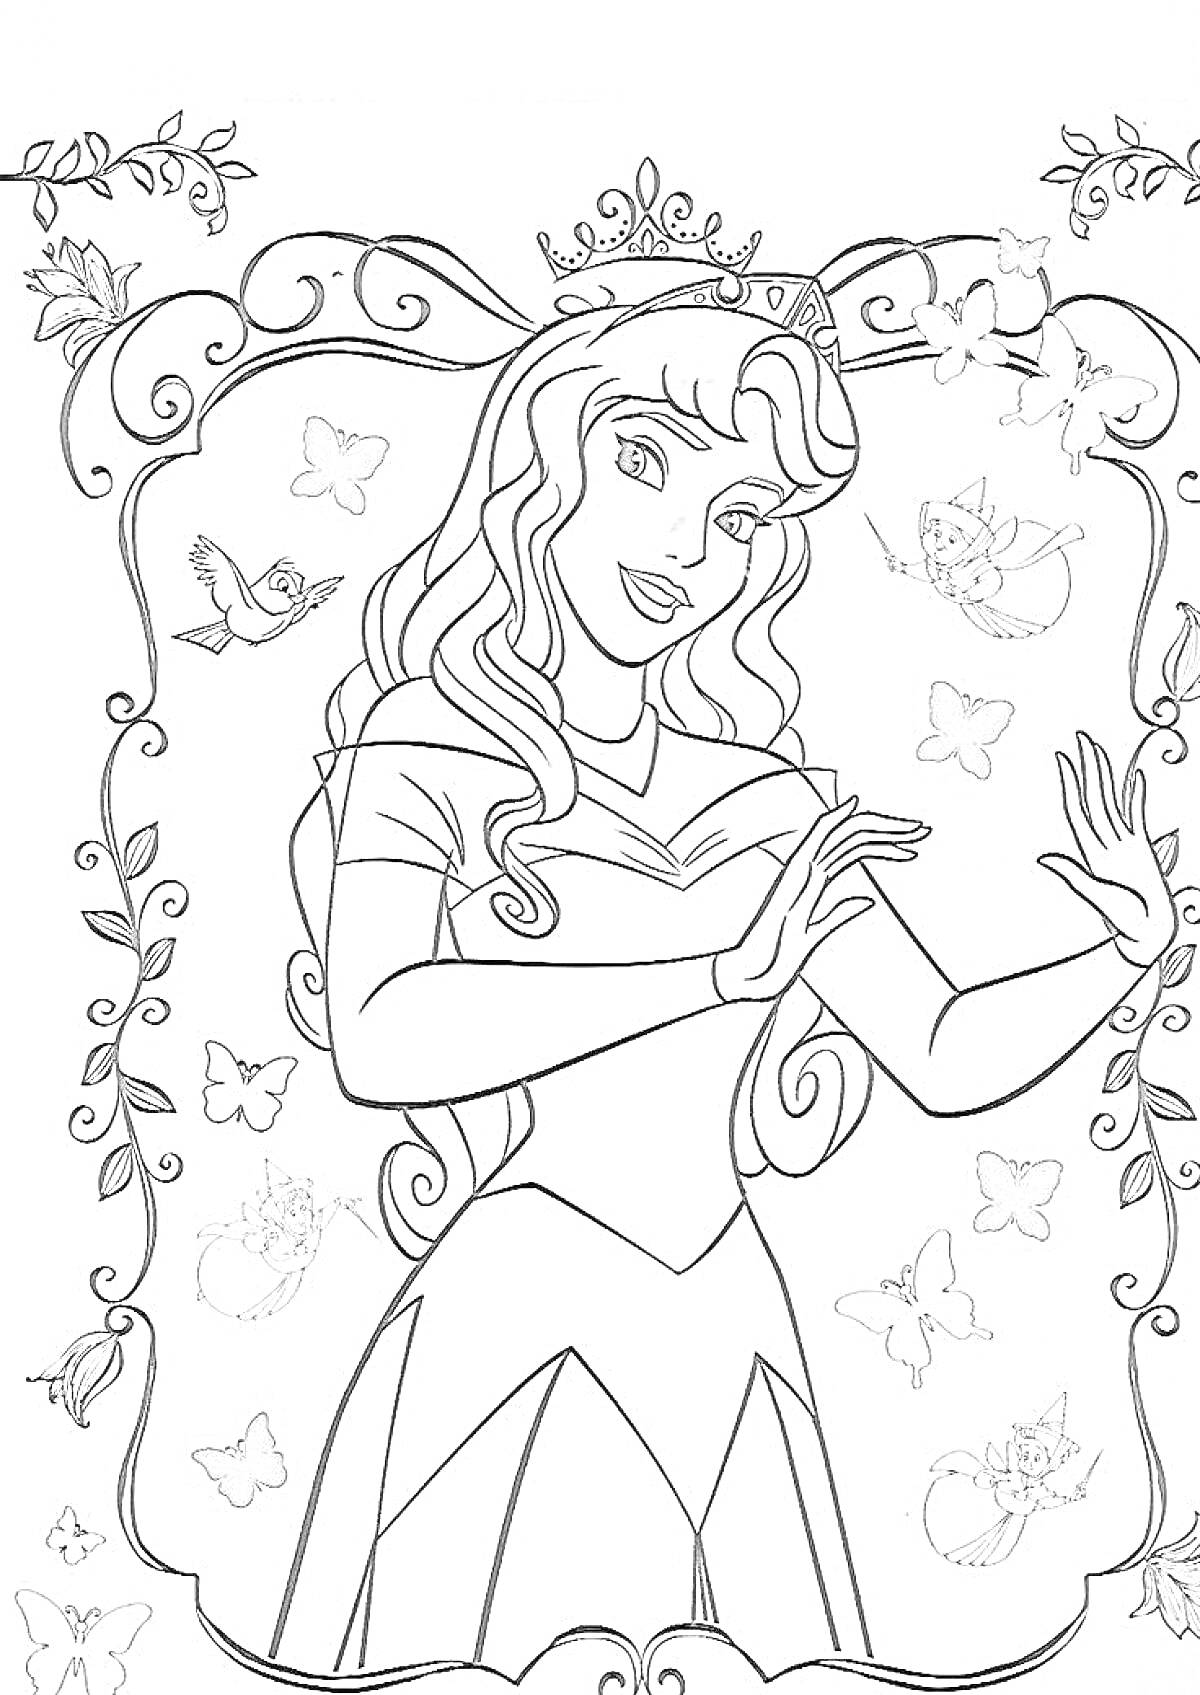 Раскраска Принцесса с длинными волосами, бабочками, птичкой и феями